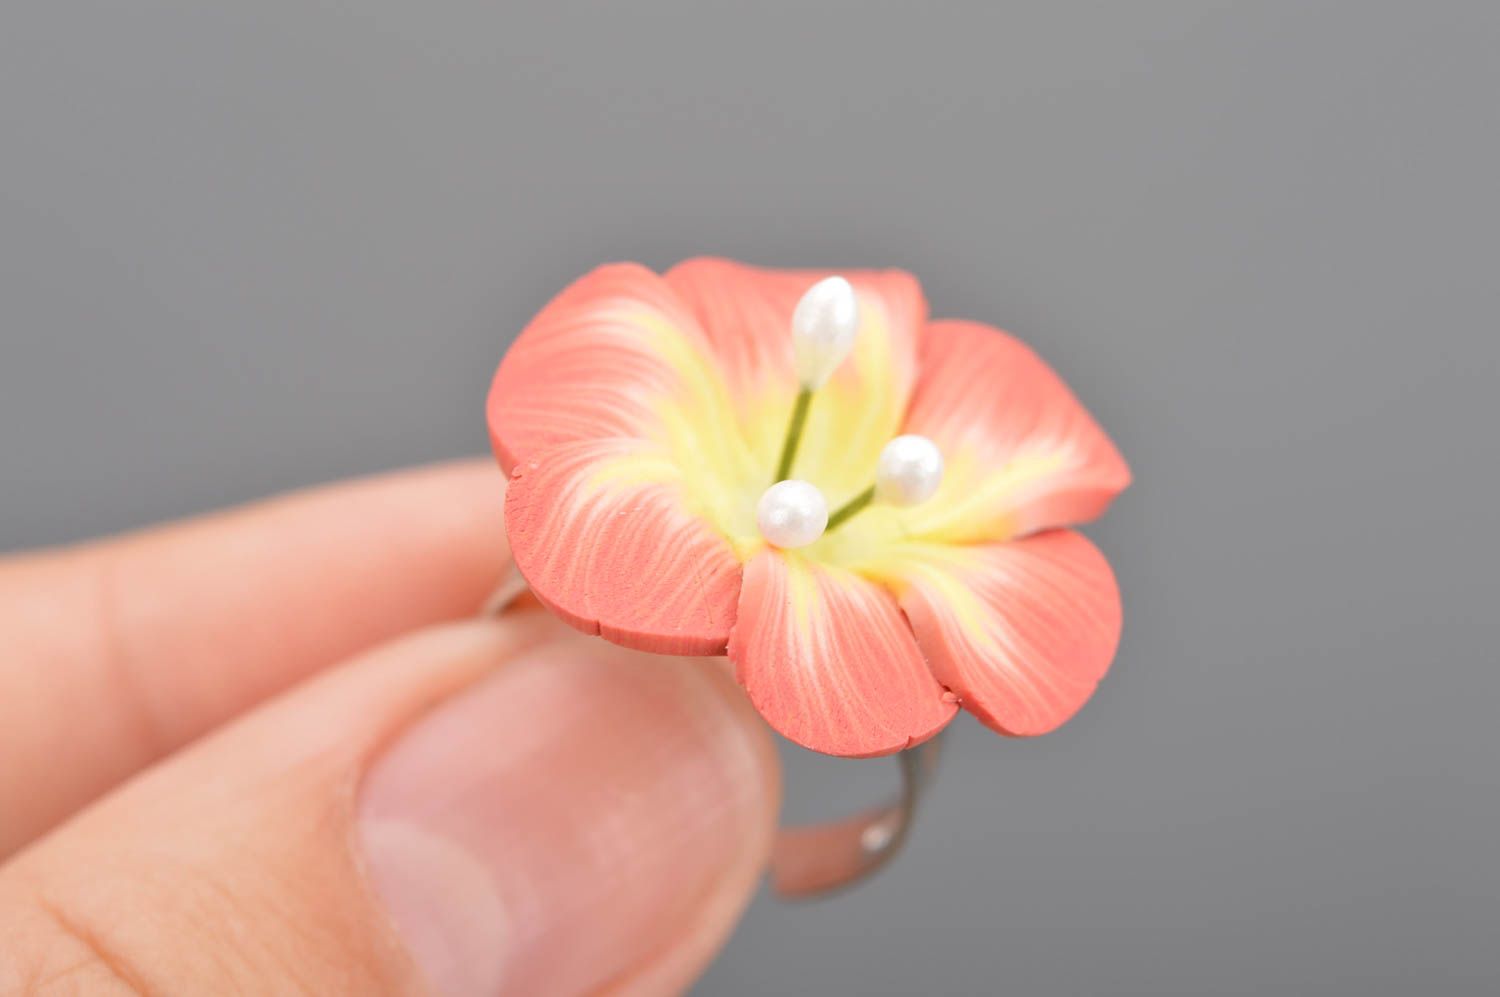 Кольцо цветок из полимерной глины персиковое нежное крупное ручная работа фото 2